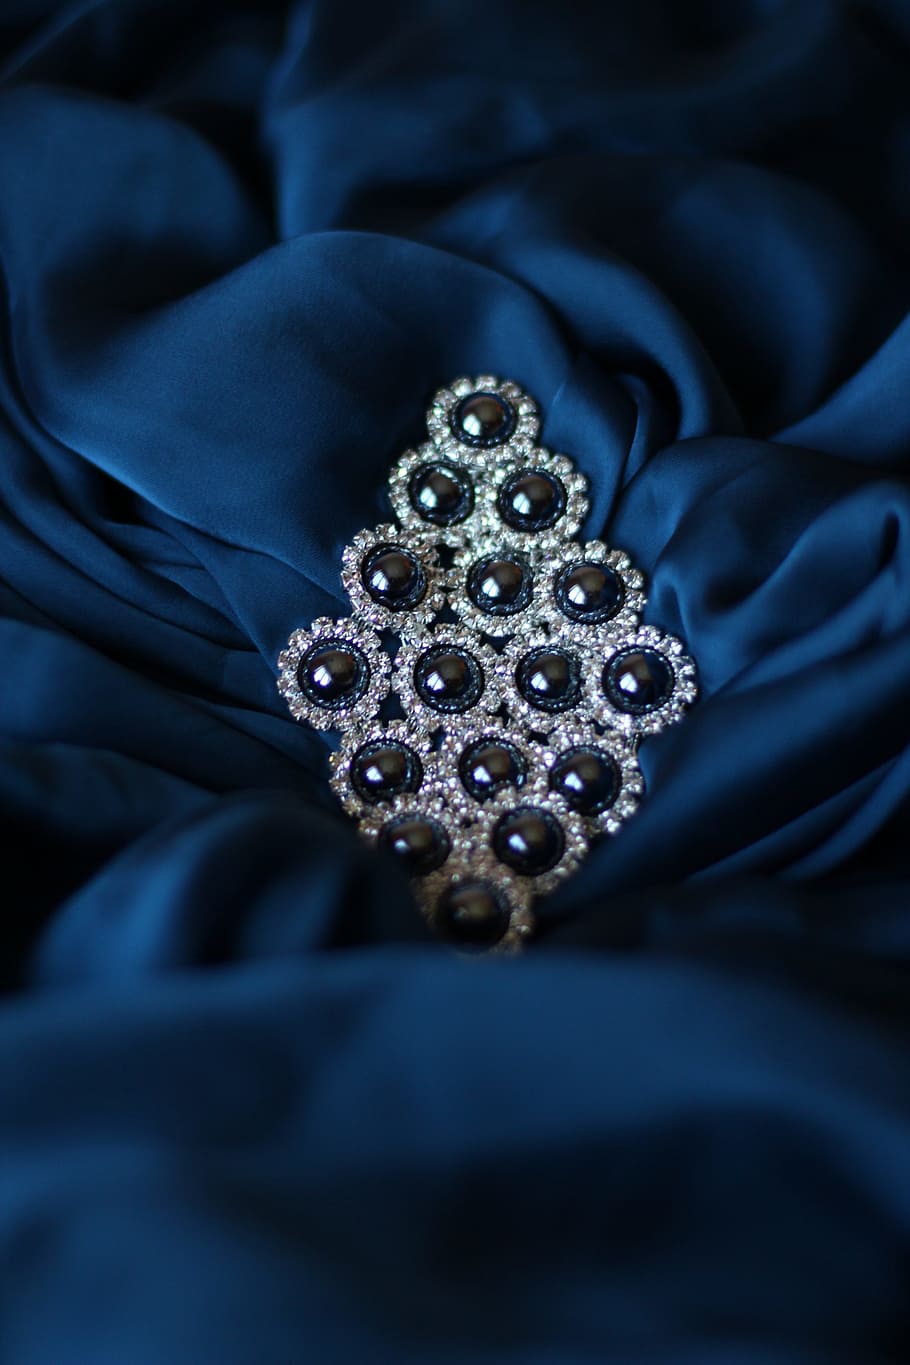 Adorno, seda, azul, diamante - gema, lujo, joyería, riqueza, gema preciosa, gema, primer plano